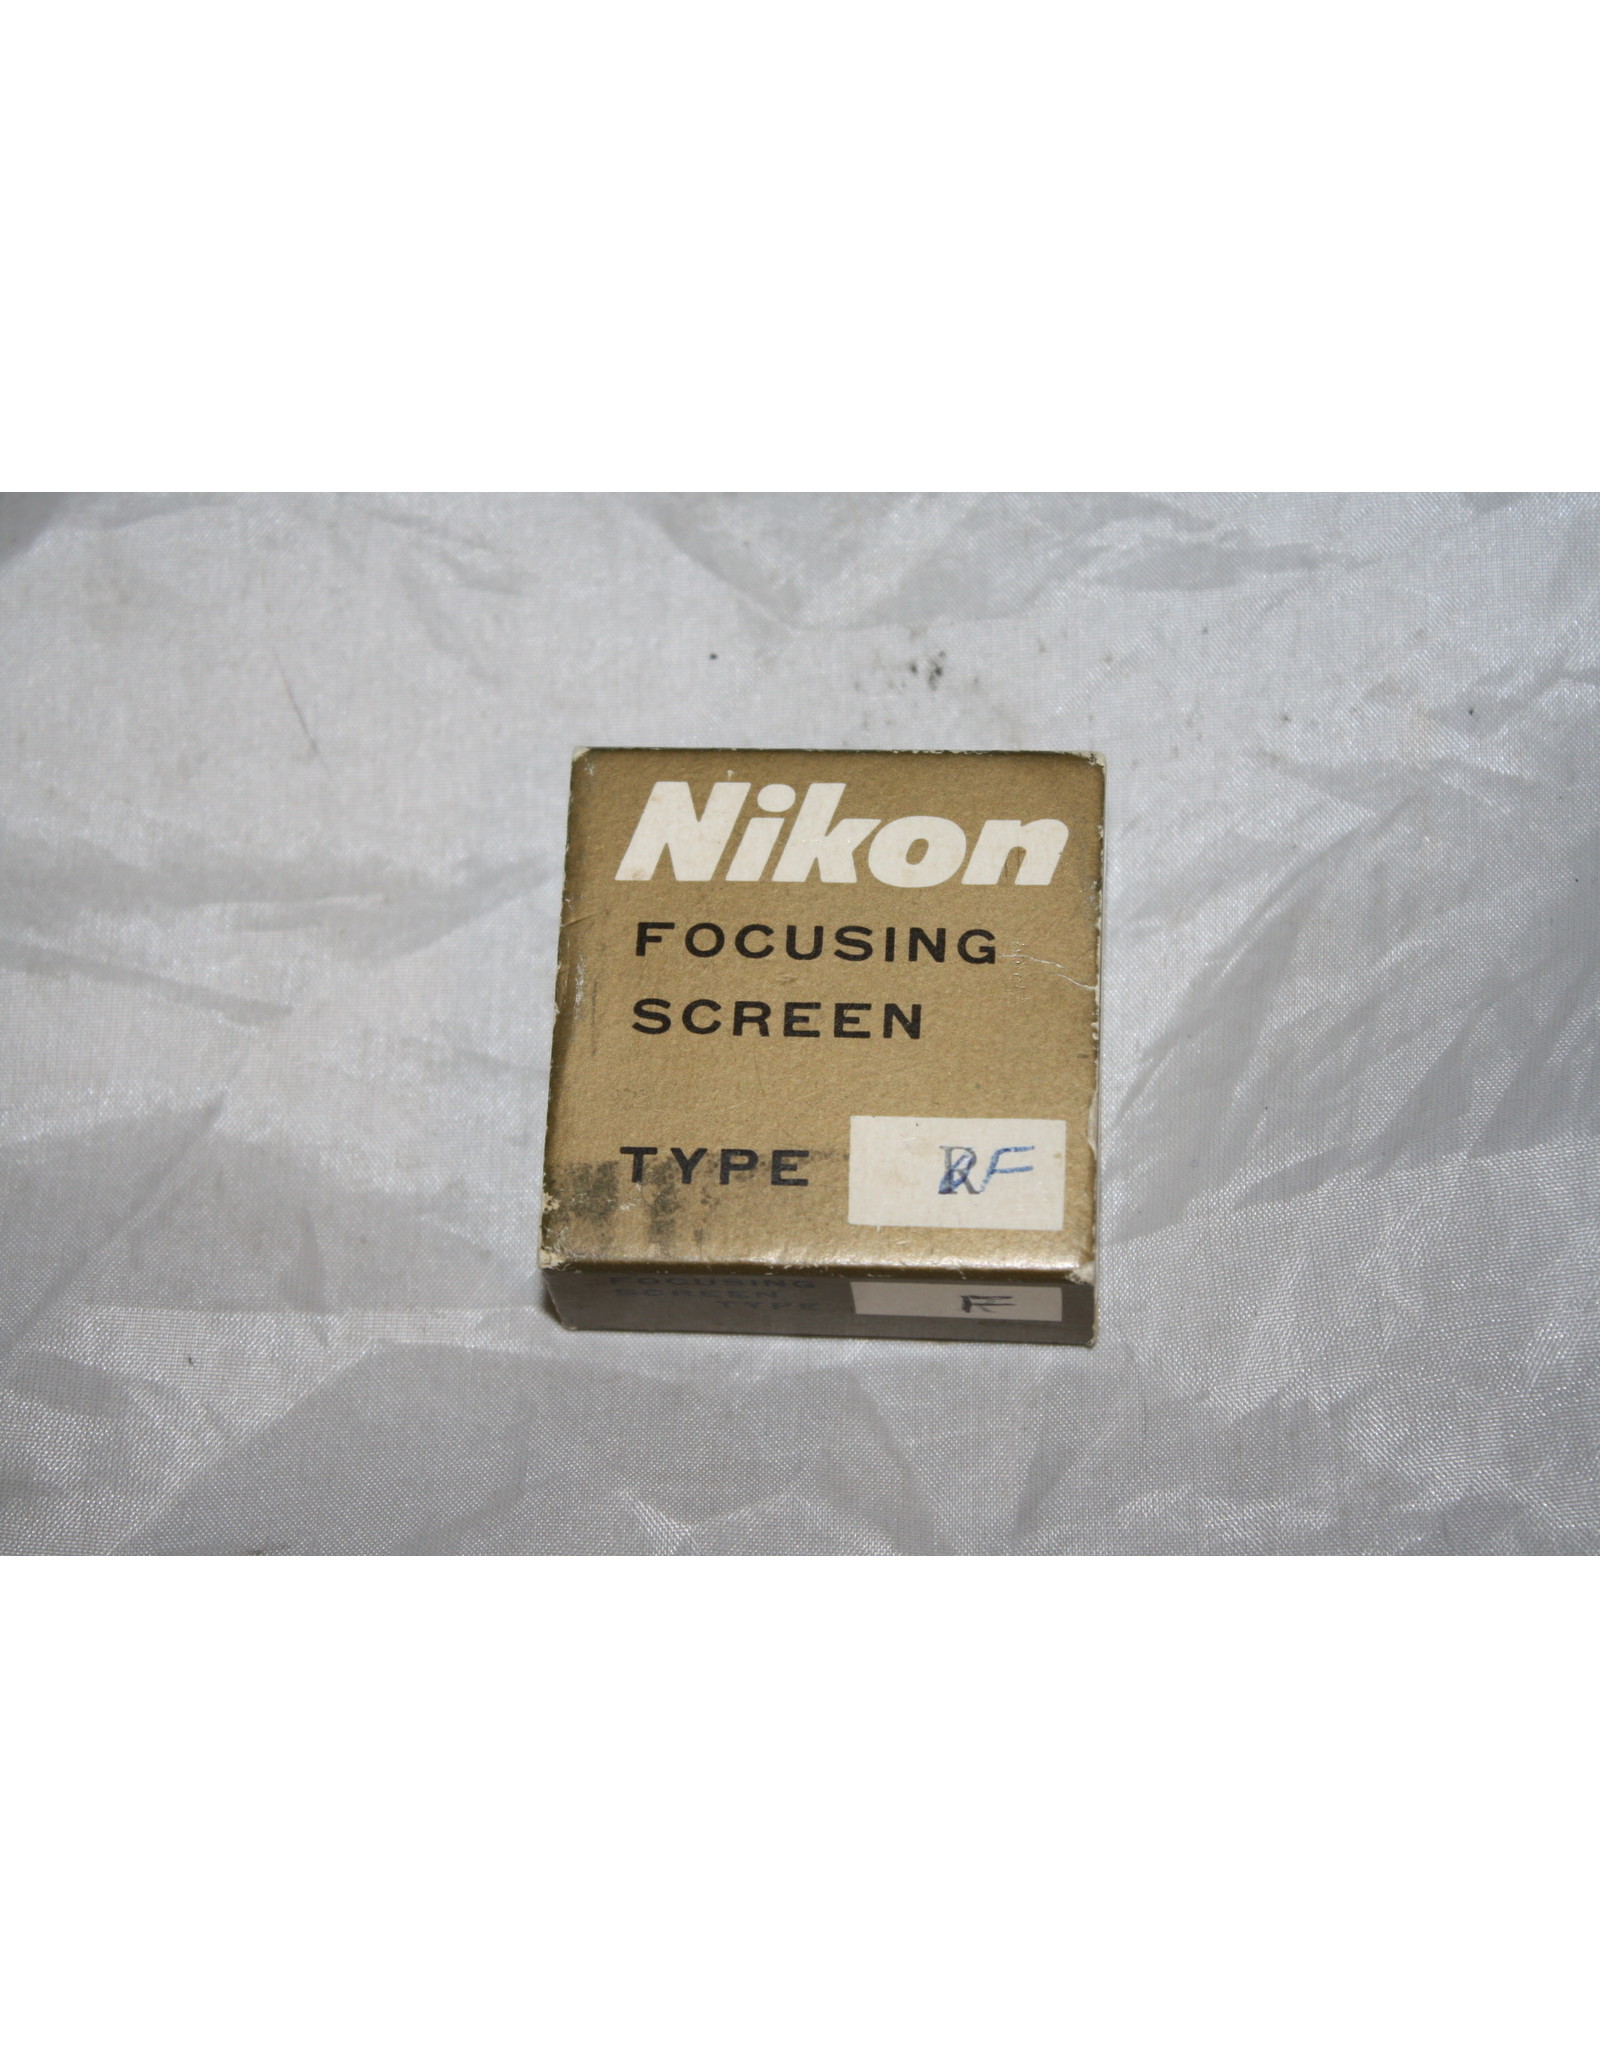 Nikon F Focusing Screen Type "F"